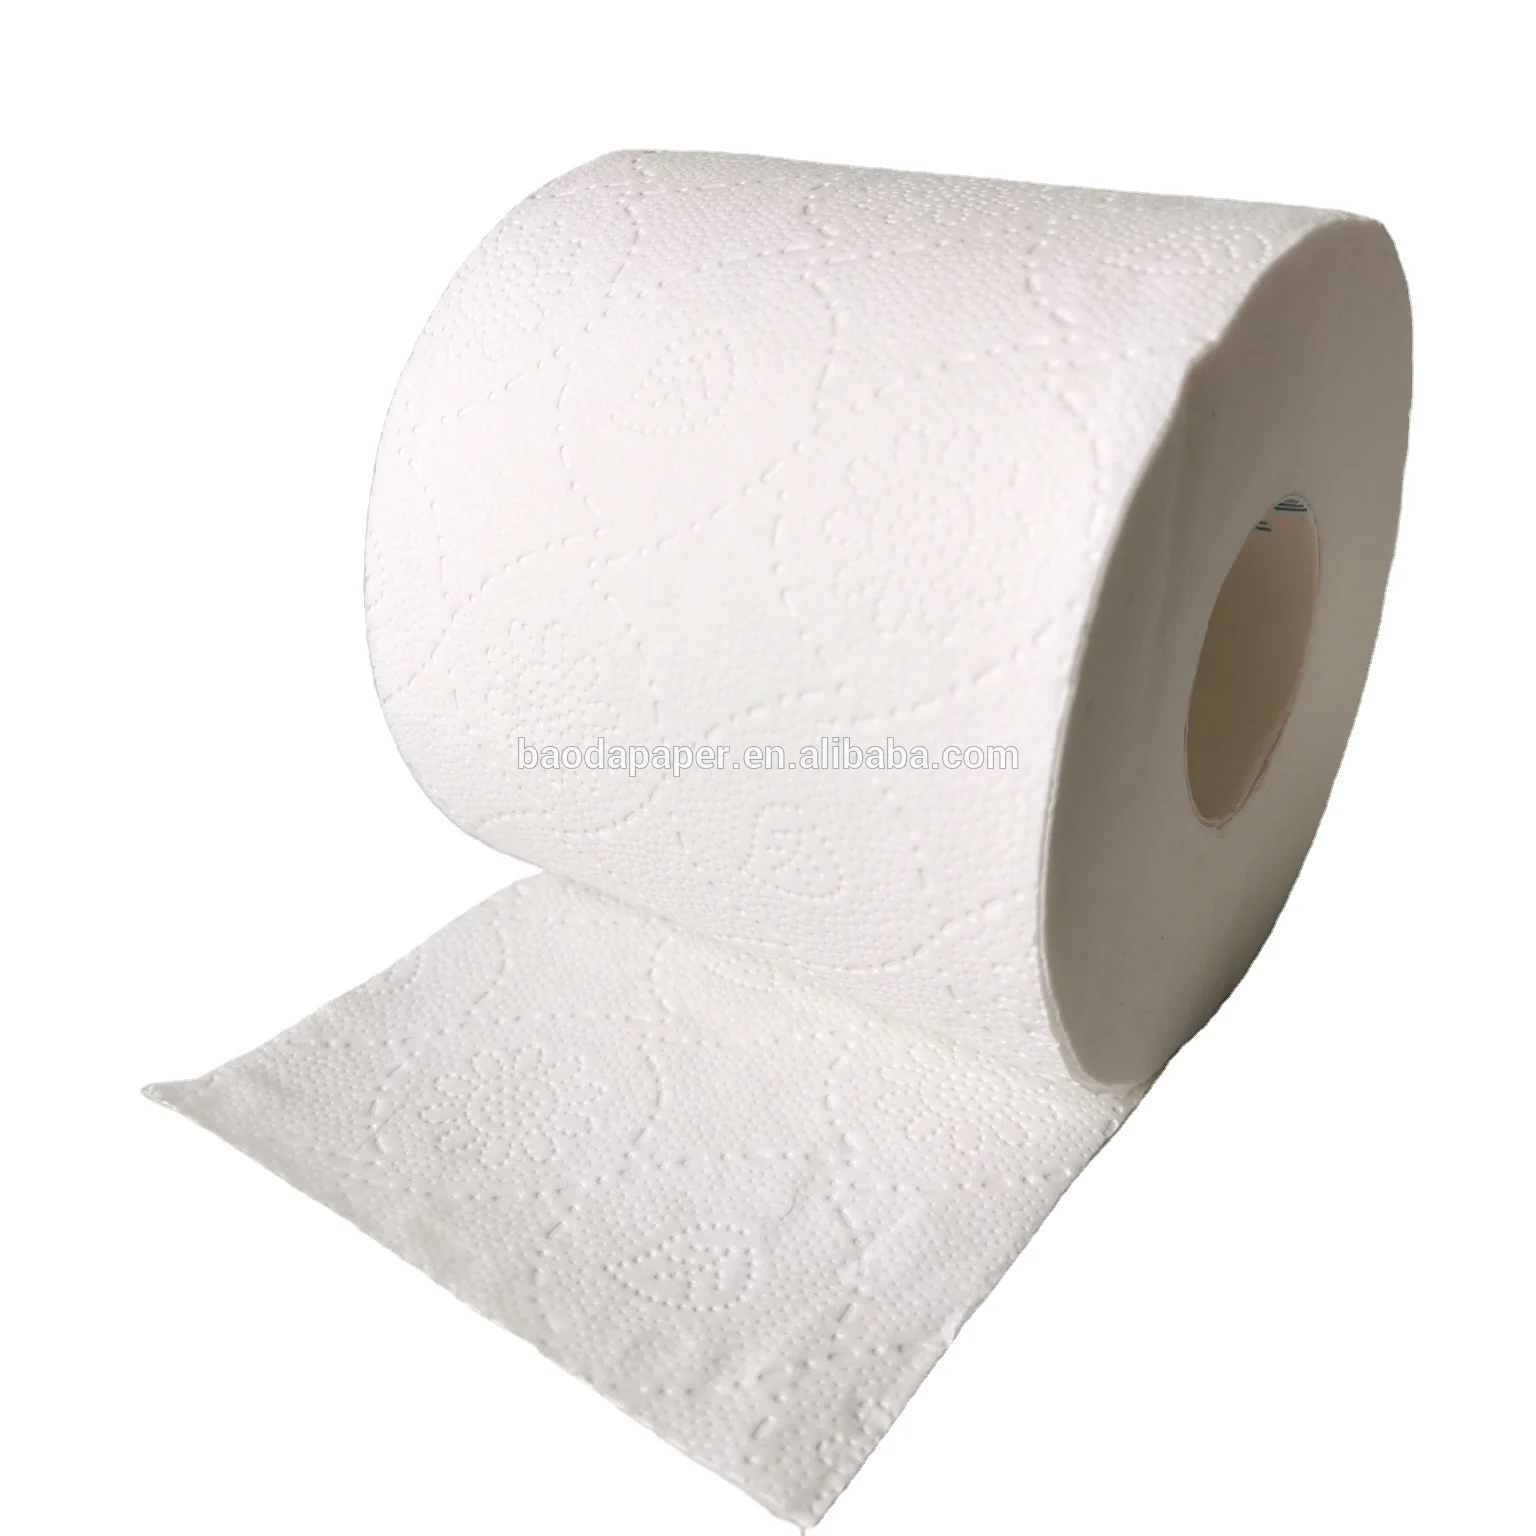 Дешевая бумага. Бумага в рулонах Китай. Туалетная бумага Китай. Туалетная бумага на белом фоне. Бумажные полотенца с тиснением.